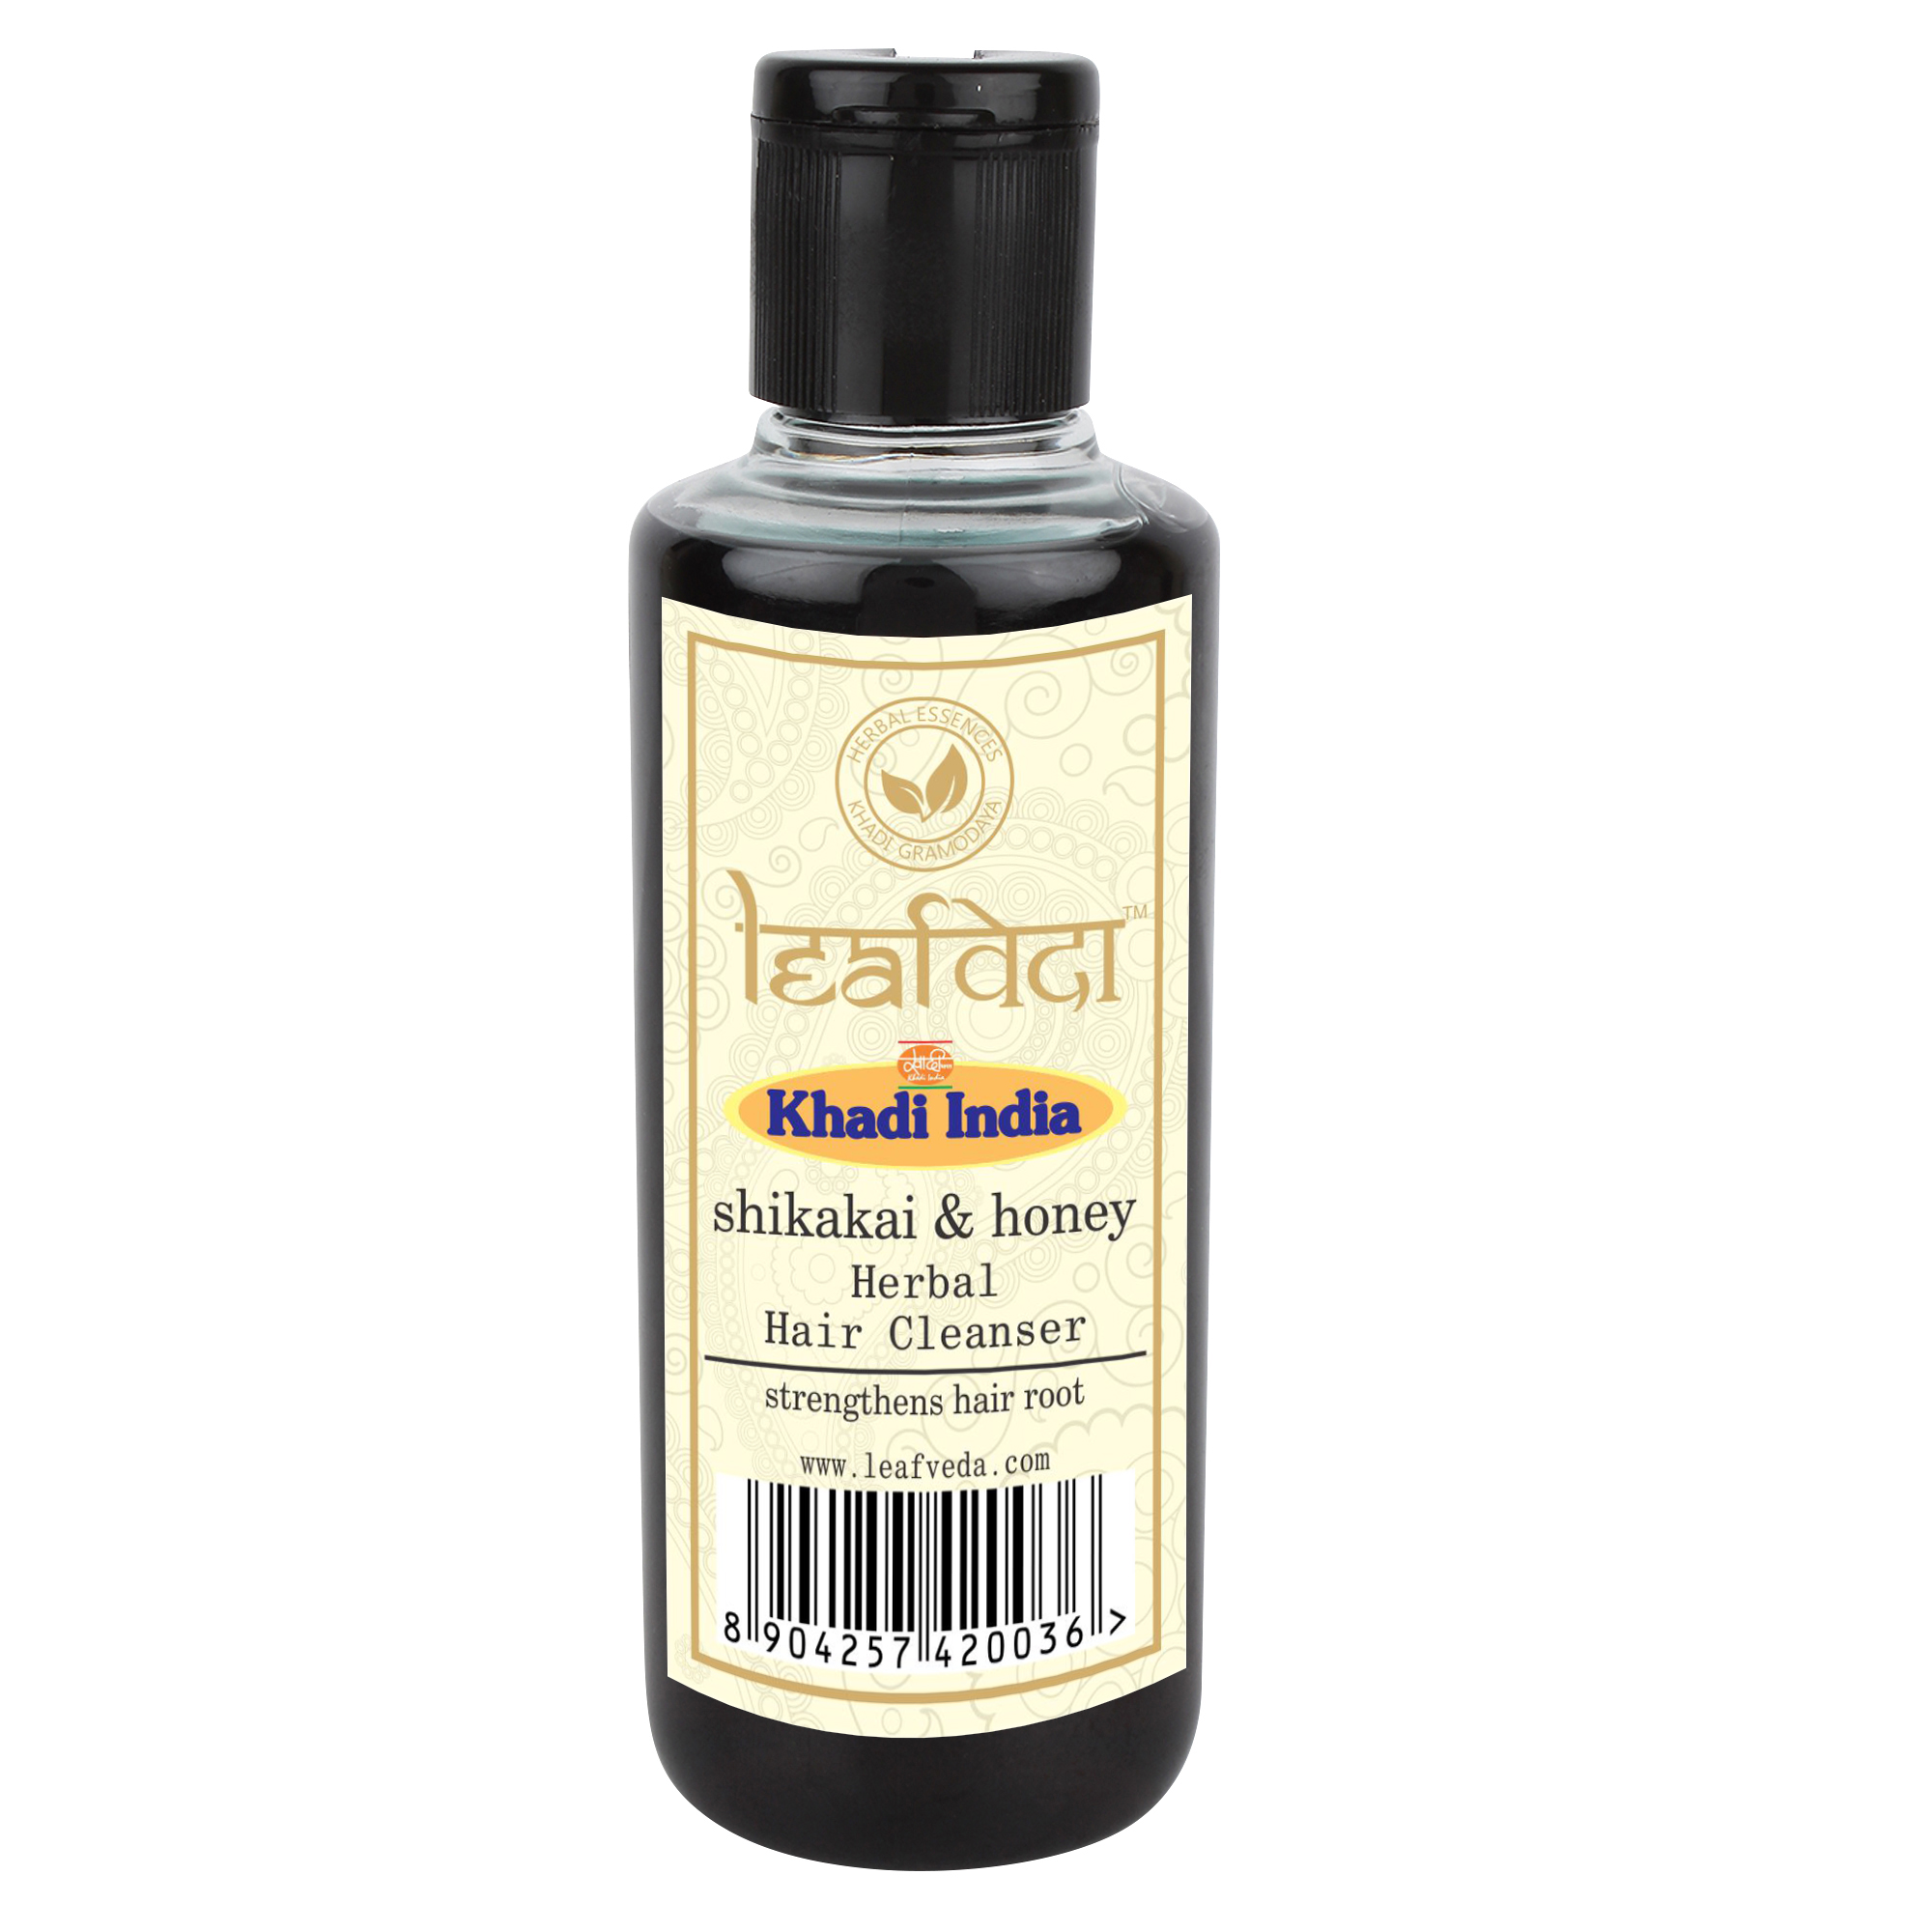 Buy Khadi Leafveda Shikakai & Honey Herbal Hair Cleanser at Best Price Online